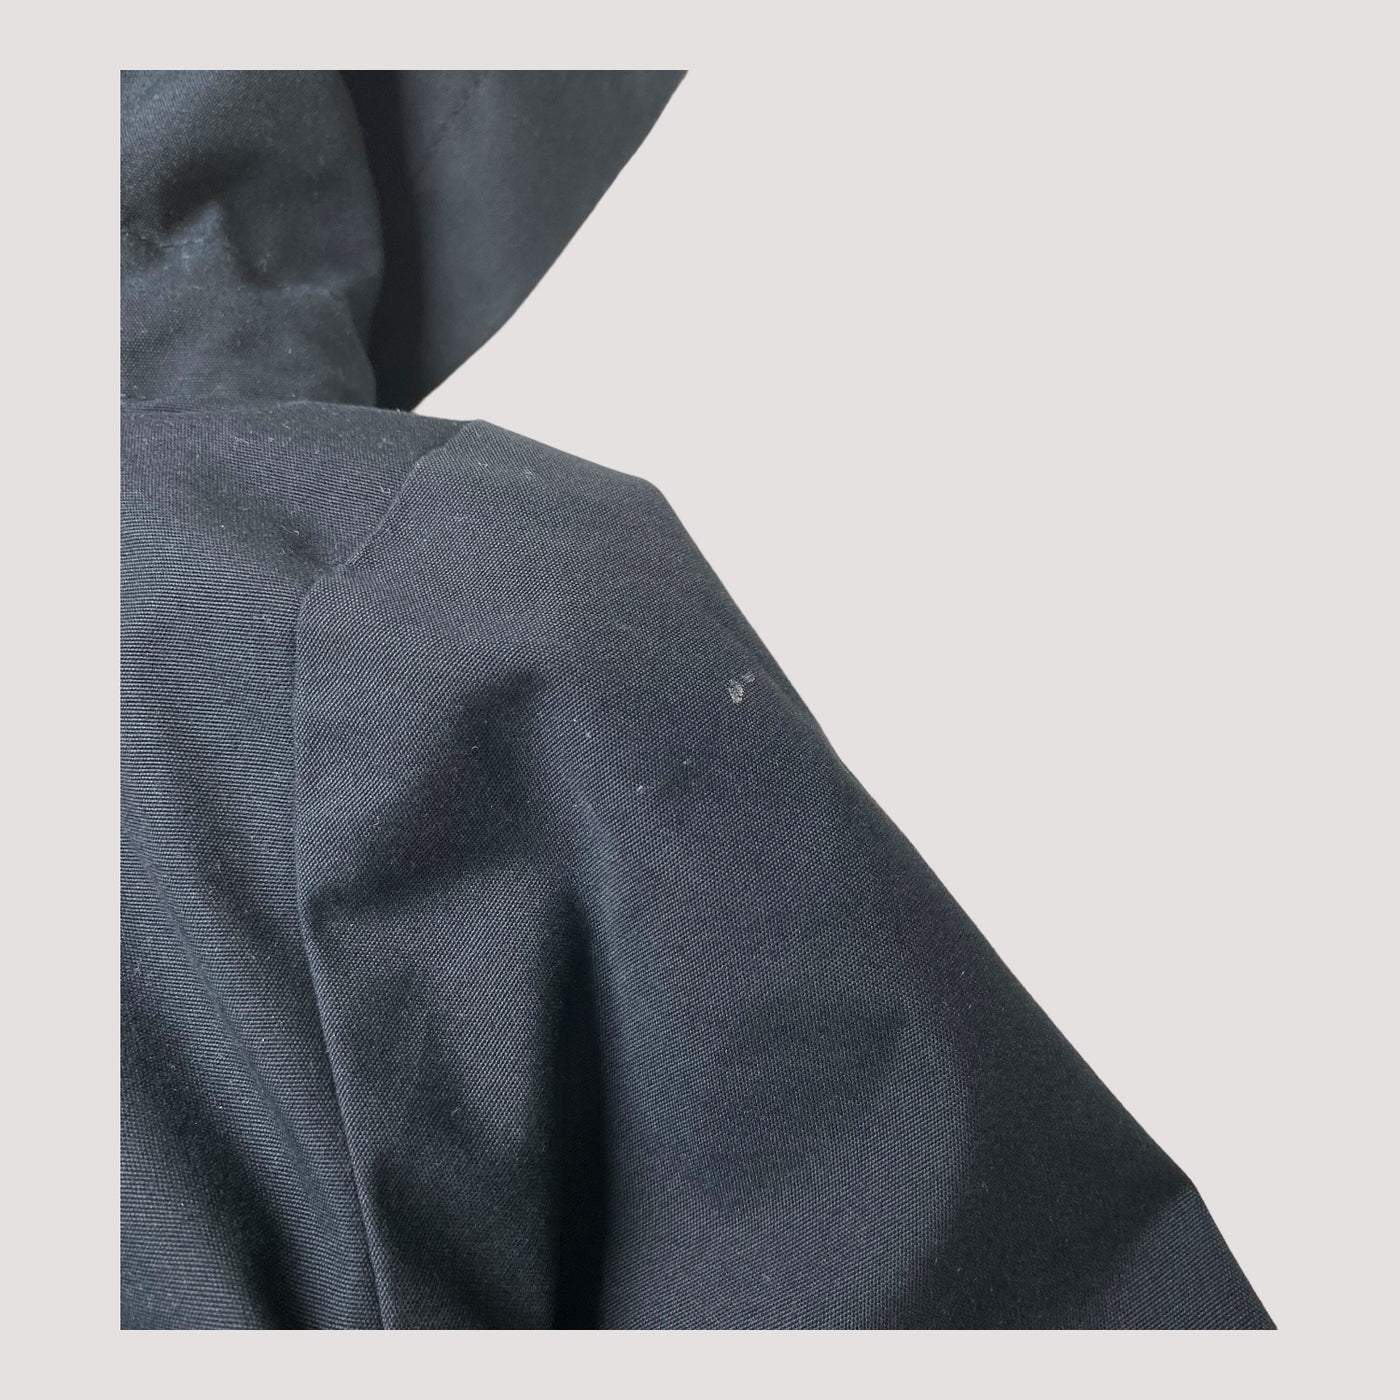 Mini Rodini pico jacket, black | 80/86cm